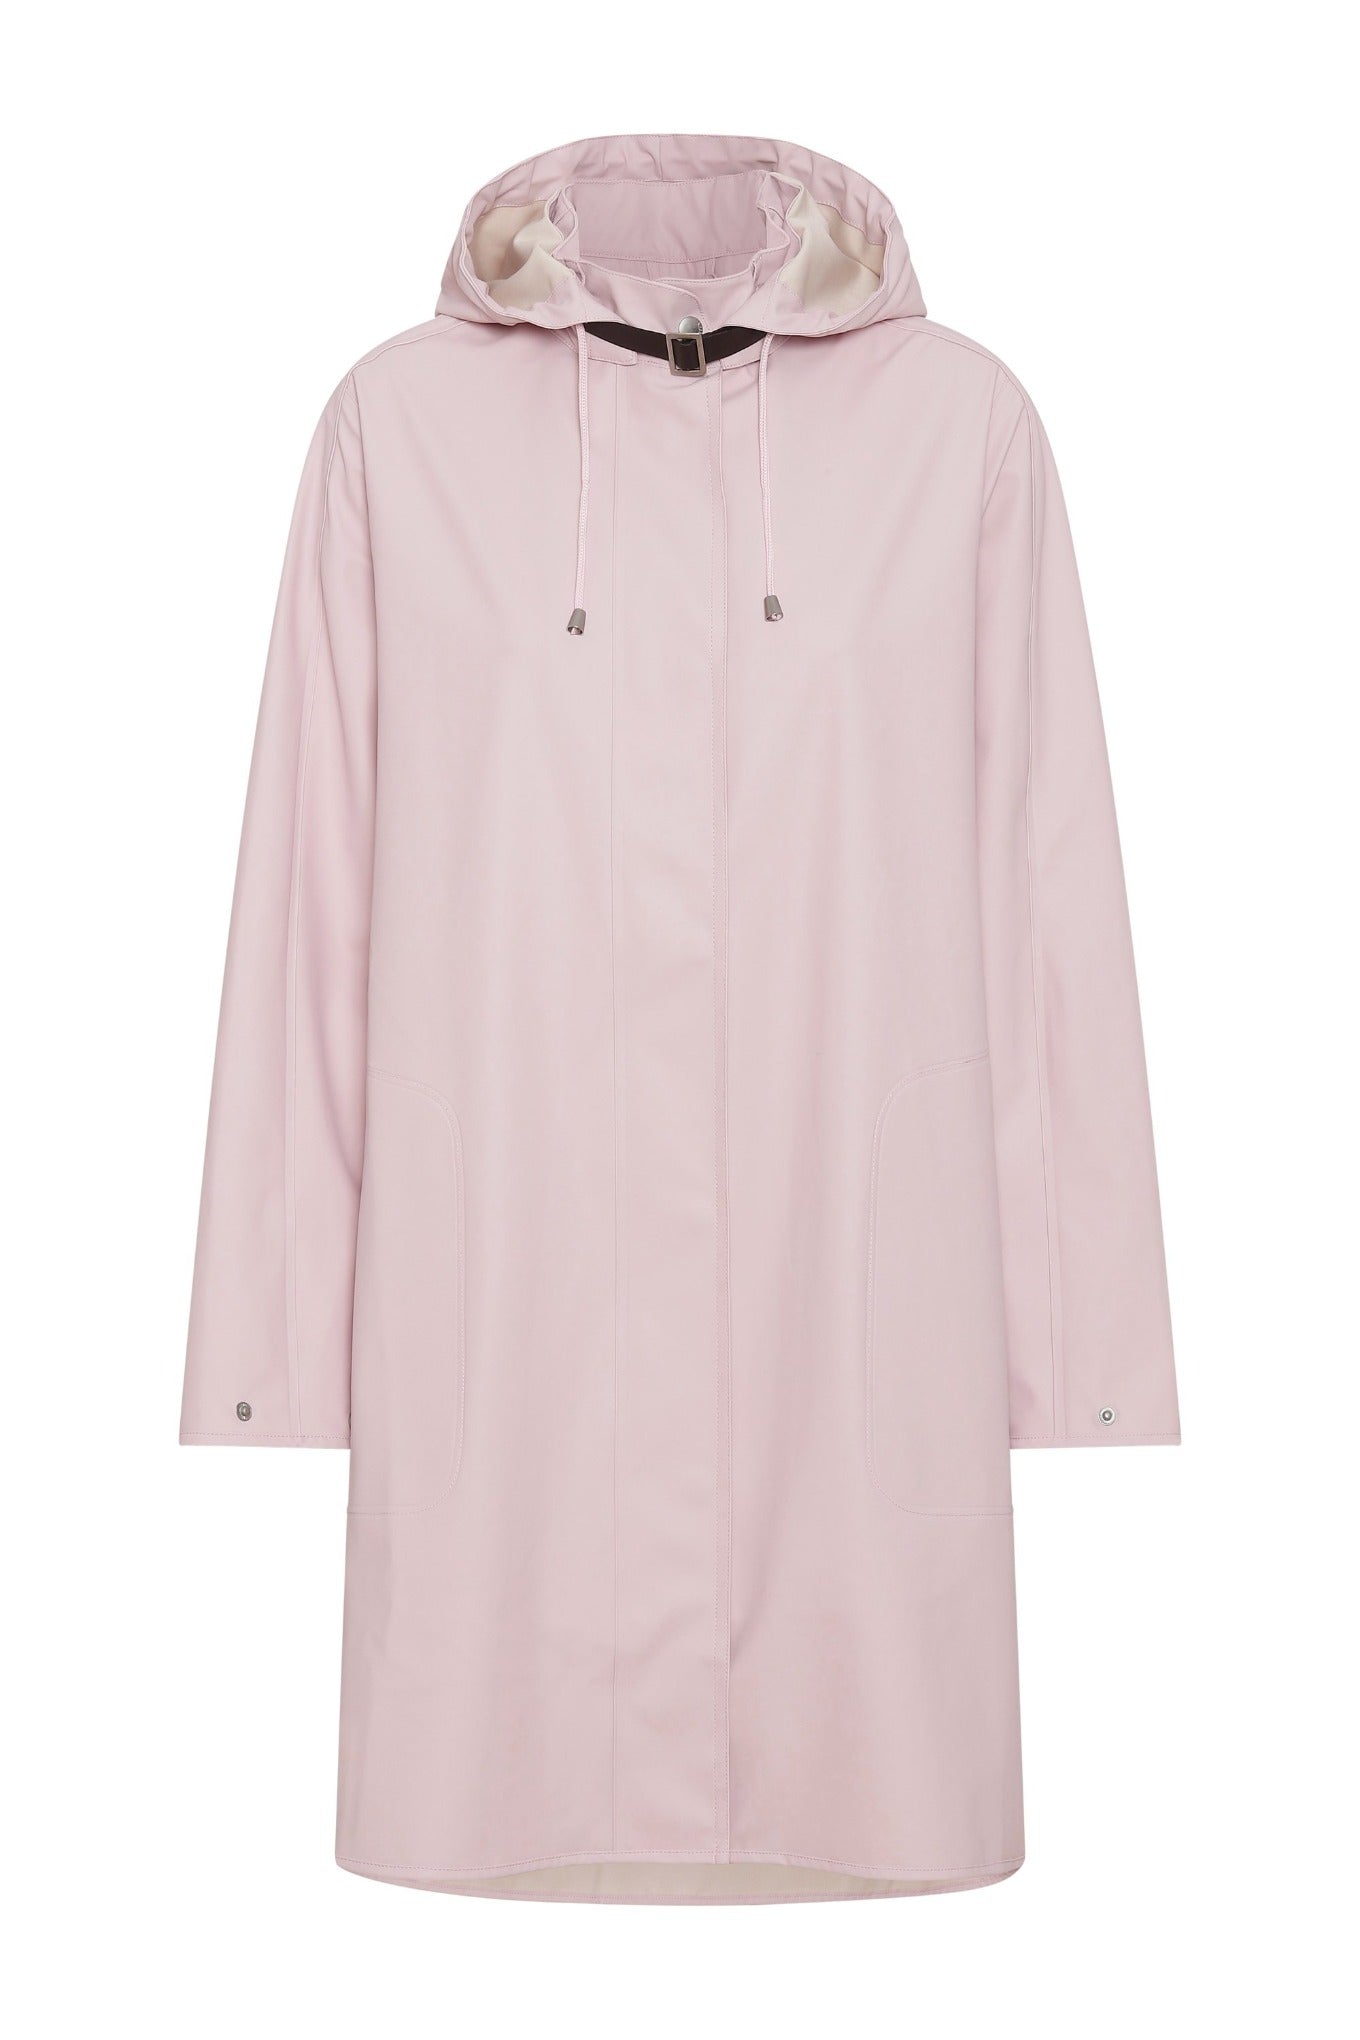 Ilse Jacobsen Rain71 Rain 71 detachable hood hooded long A-line rain coat raincoat in Adobe Rose pink.